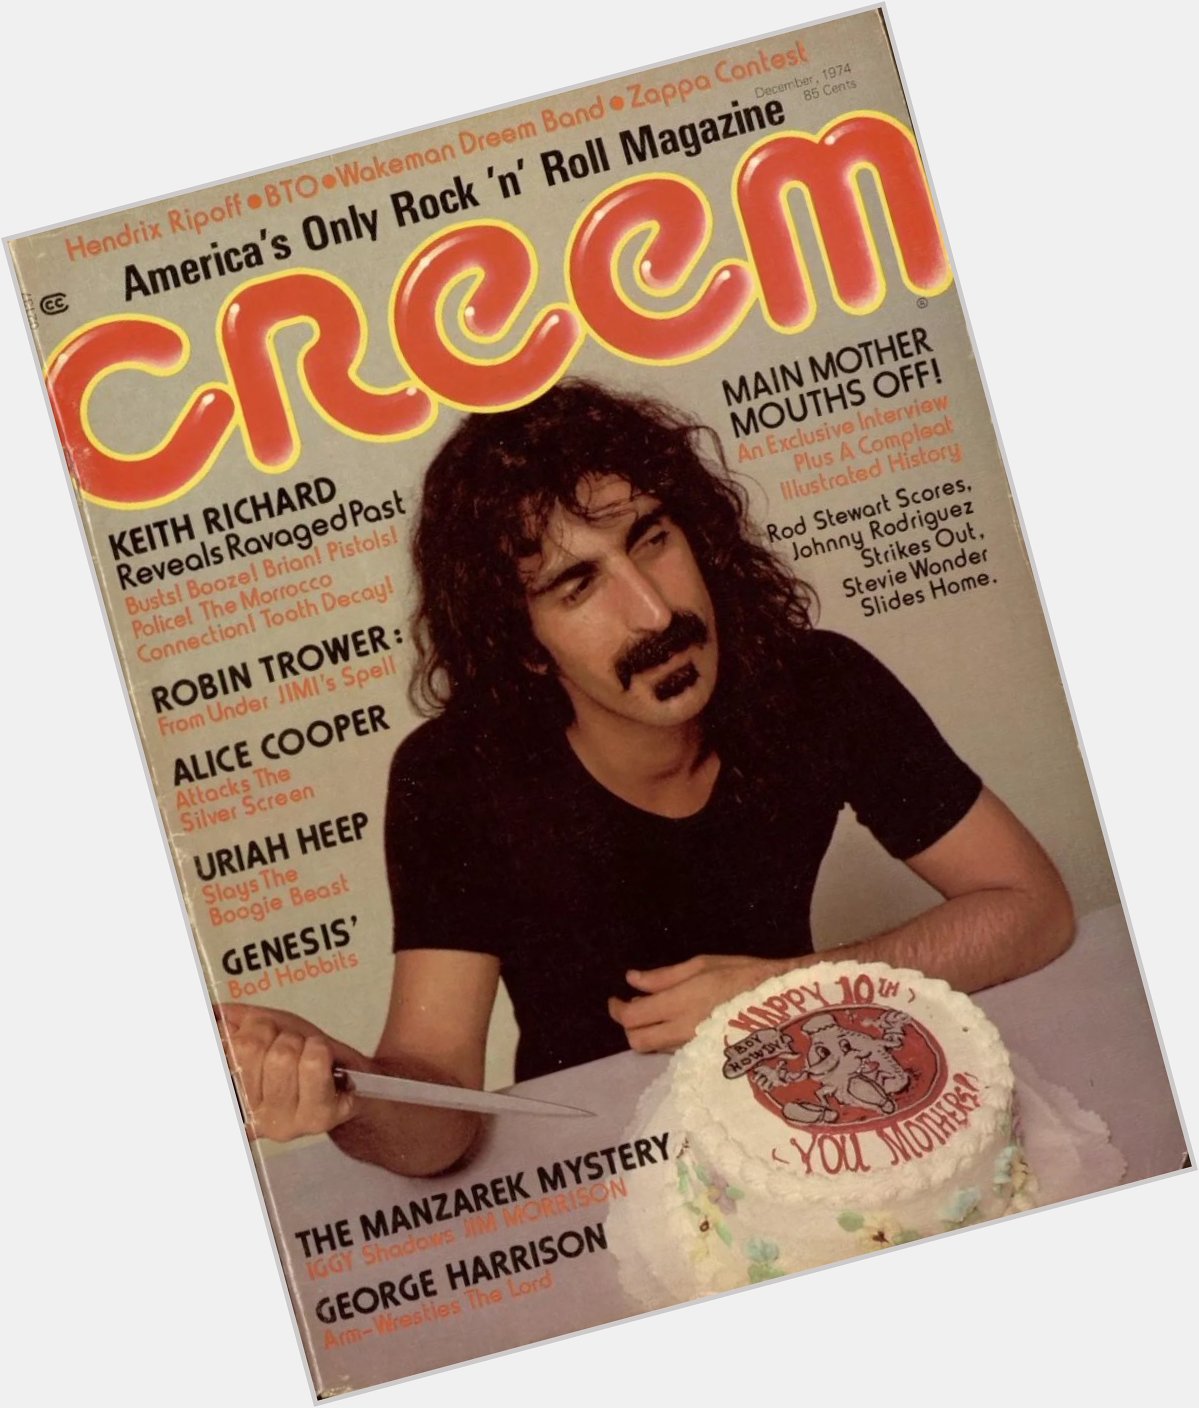 Happy birthday Frank Zappa 